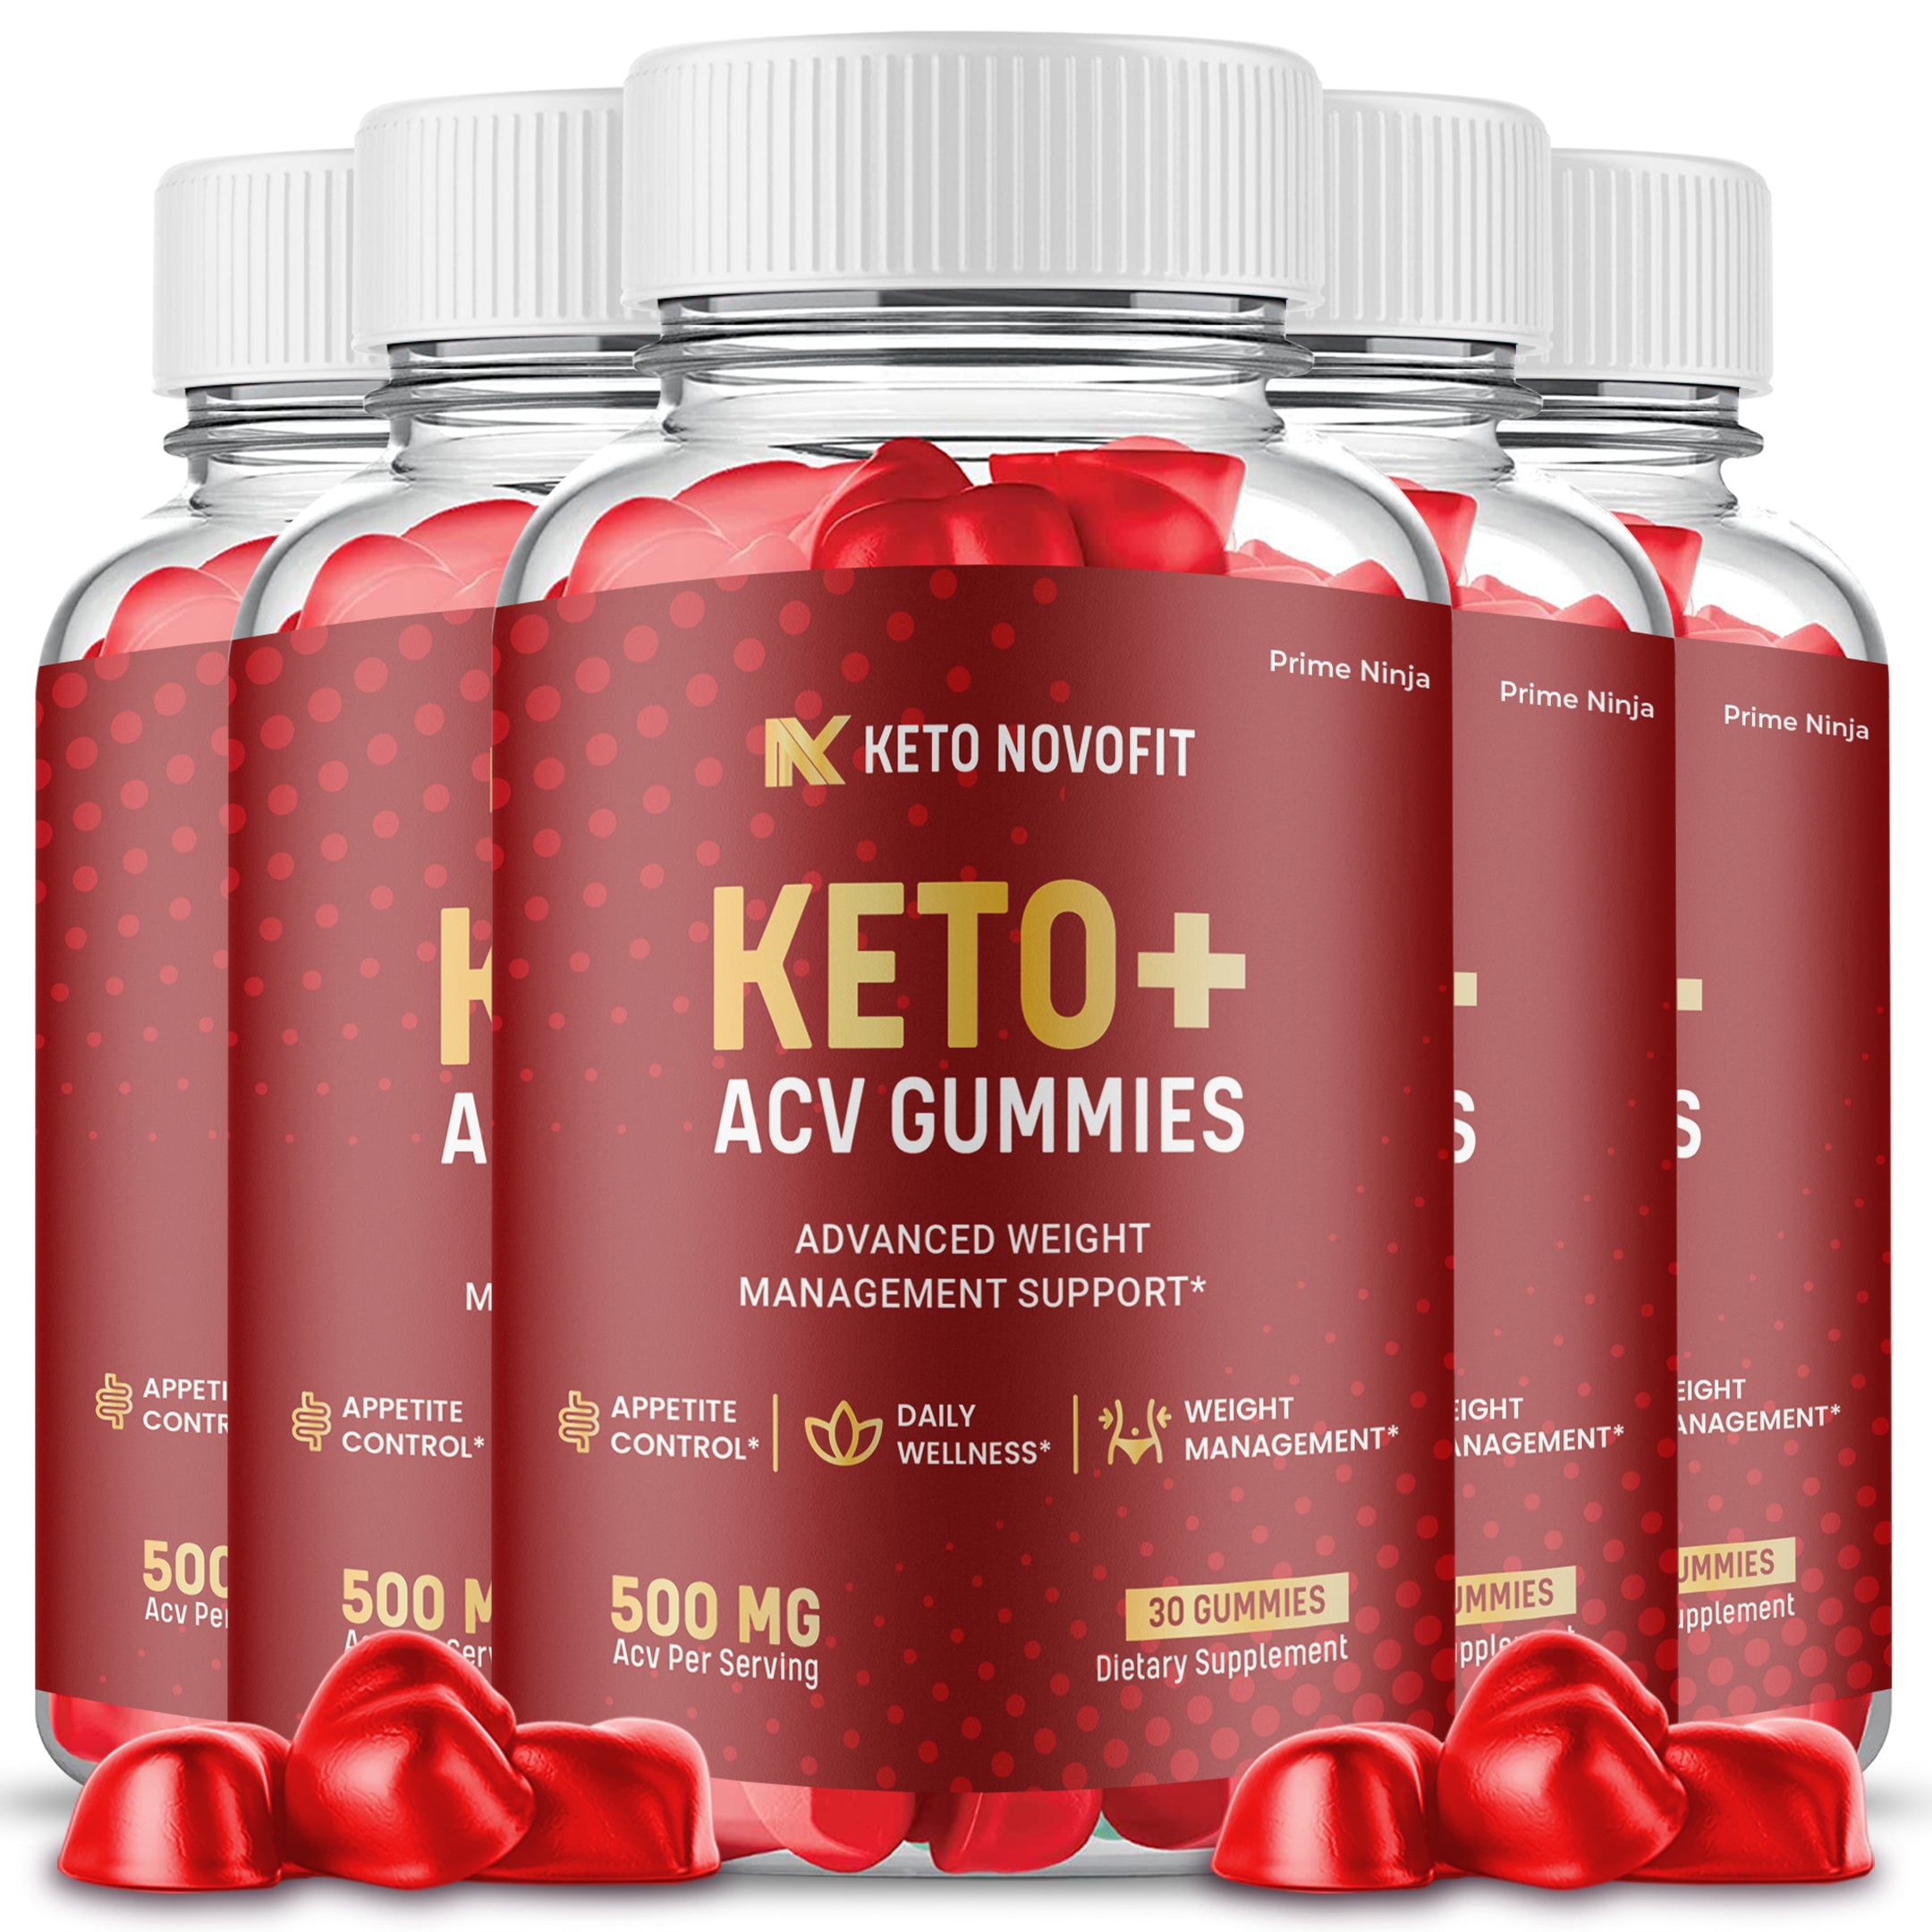 Keto Novofit ACV Gummies (5 Pack)